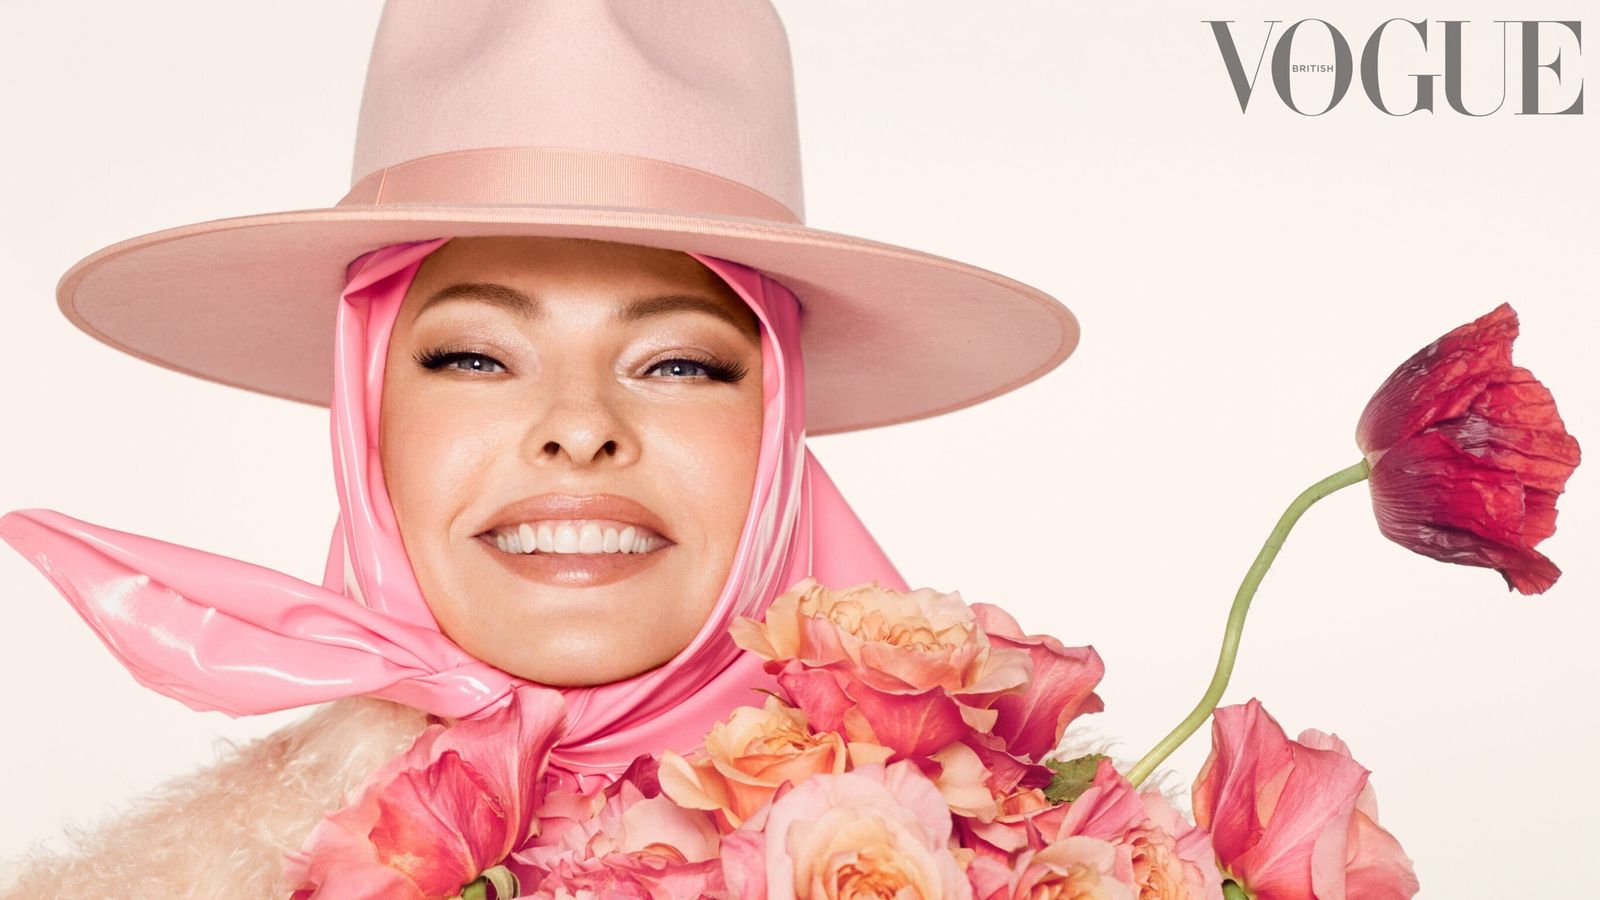 Linda Evangelista pozuje przed brytyjskim Vogue z taśmą klejącą przytrzymującą jej twarz po tym, jak została „oszpecona” |  Ents & Arts News